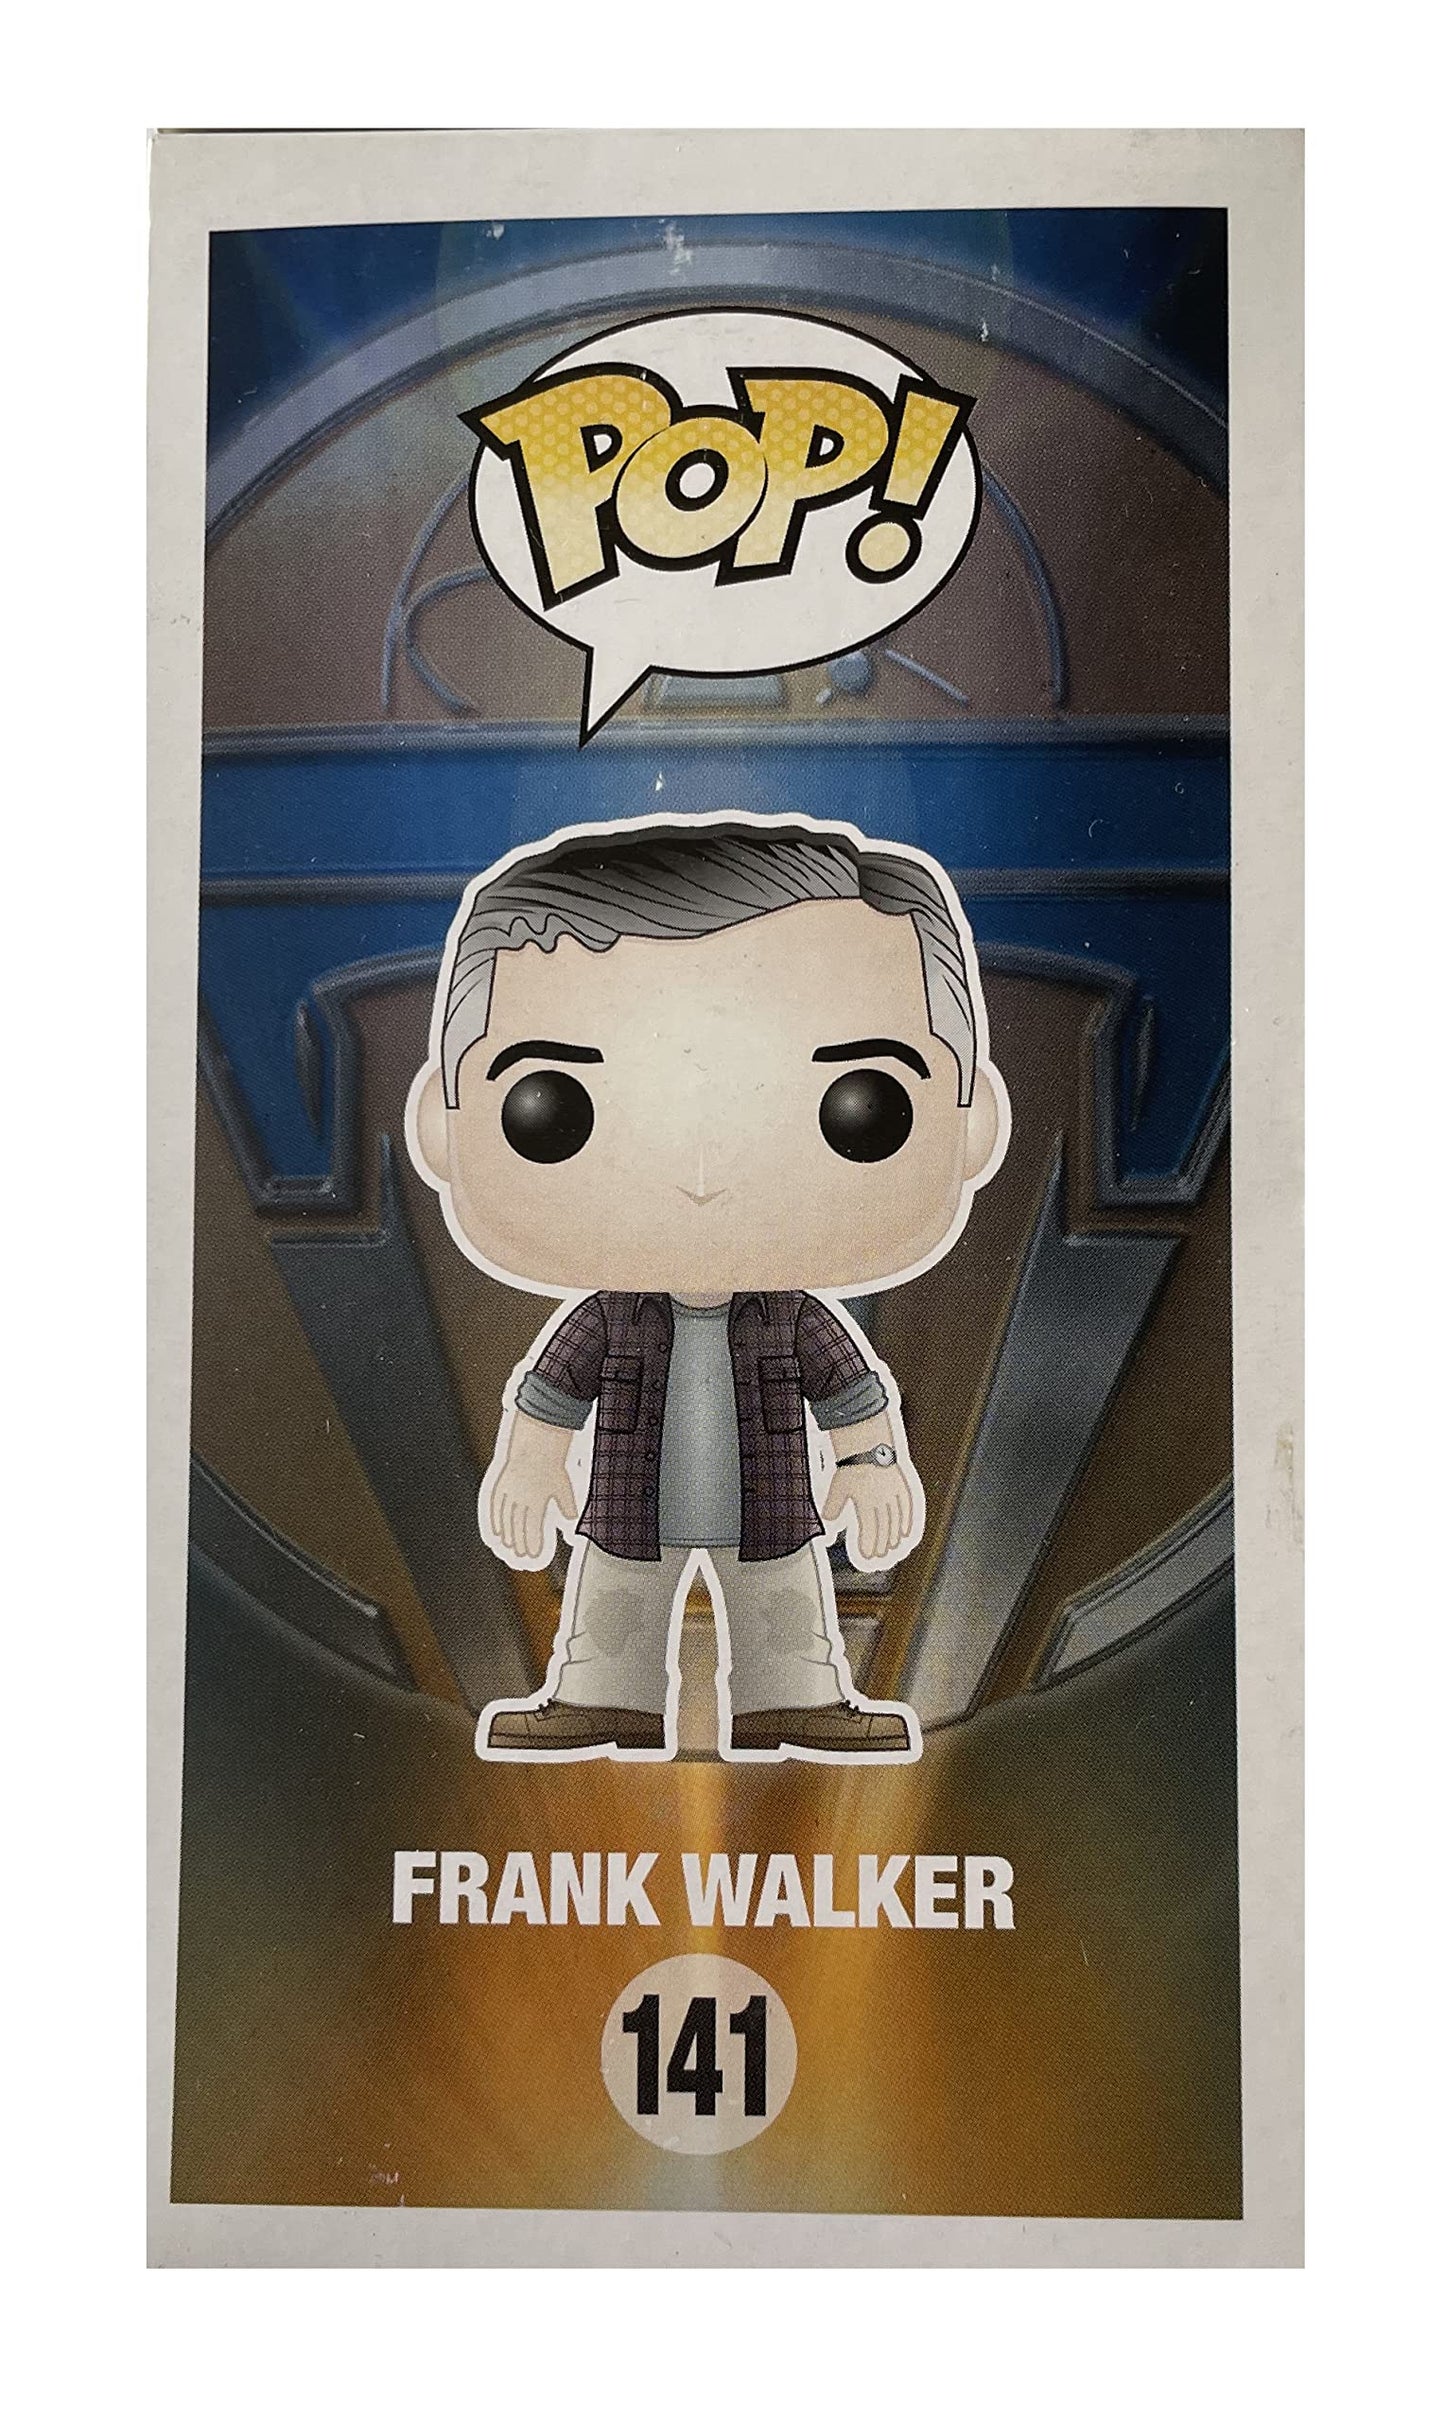 Funko 2018 - Disney Tomorrowland - Frank Walker Pop Vinyl Bobble Head Figure - Brand New Shop Stock Room Find